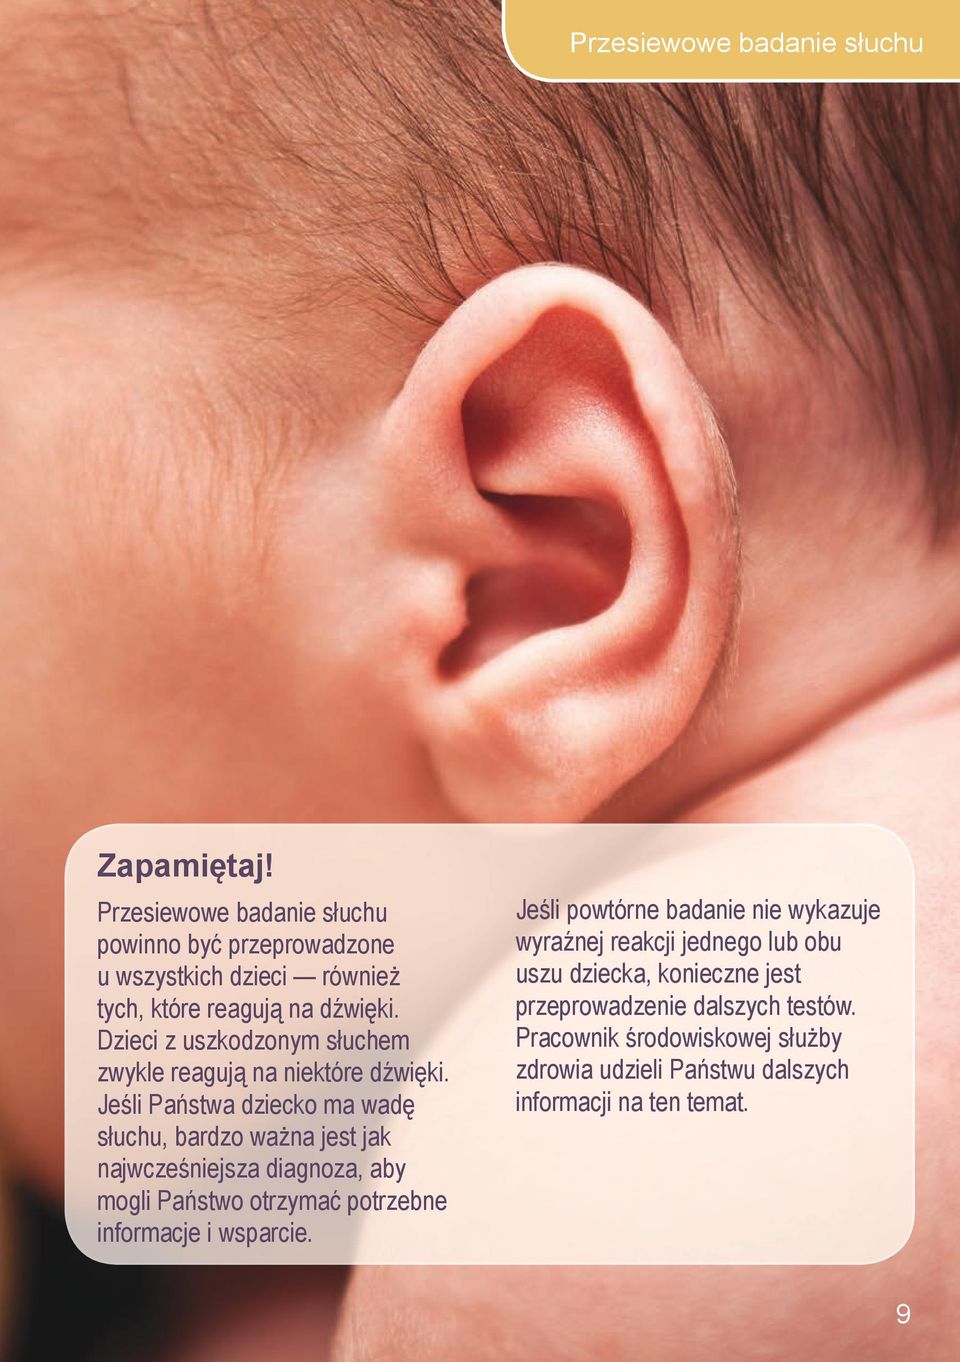 Dzieci z uszkodzonym słuchem zwykle reagują na niektóre dźwięki.